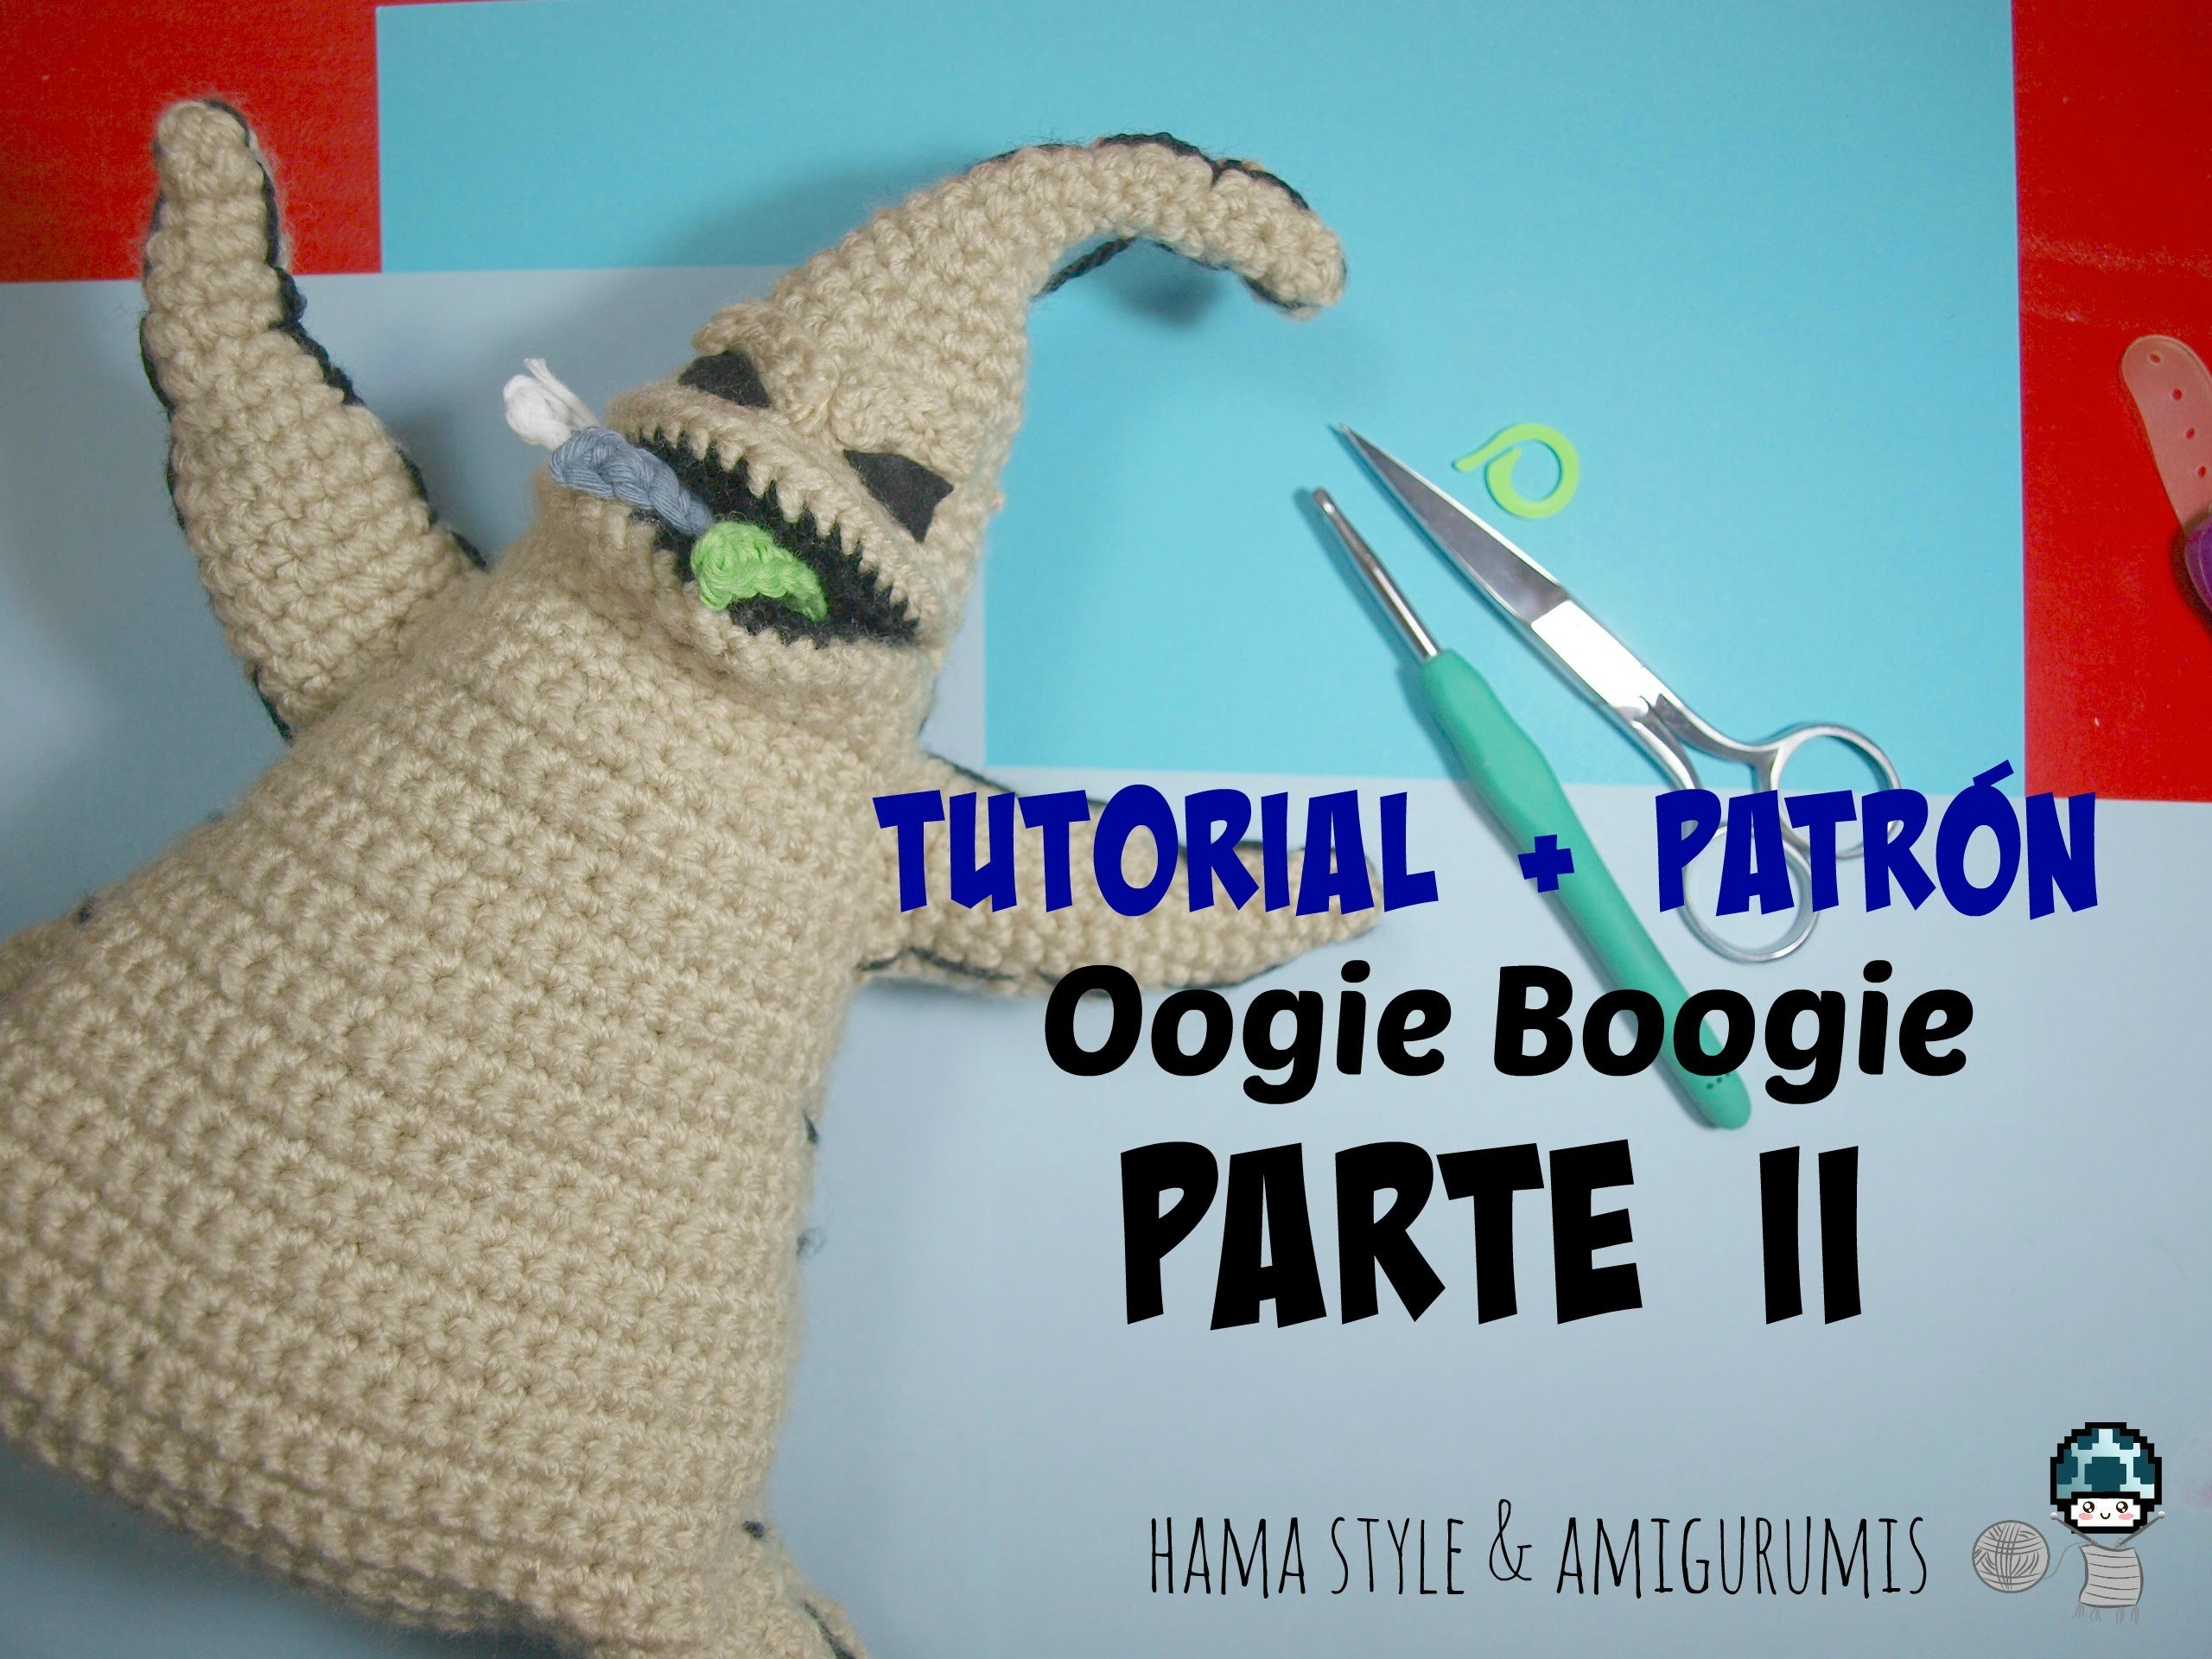 [TUTORIAL + PATRÓN] Oogie Boogie amigurumi de Pesadilla antes de Navidad - PARTE II